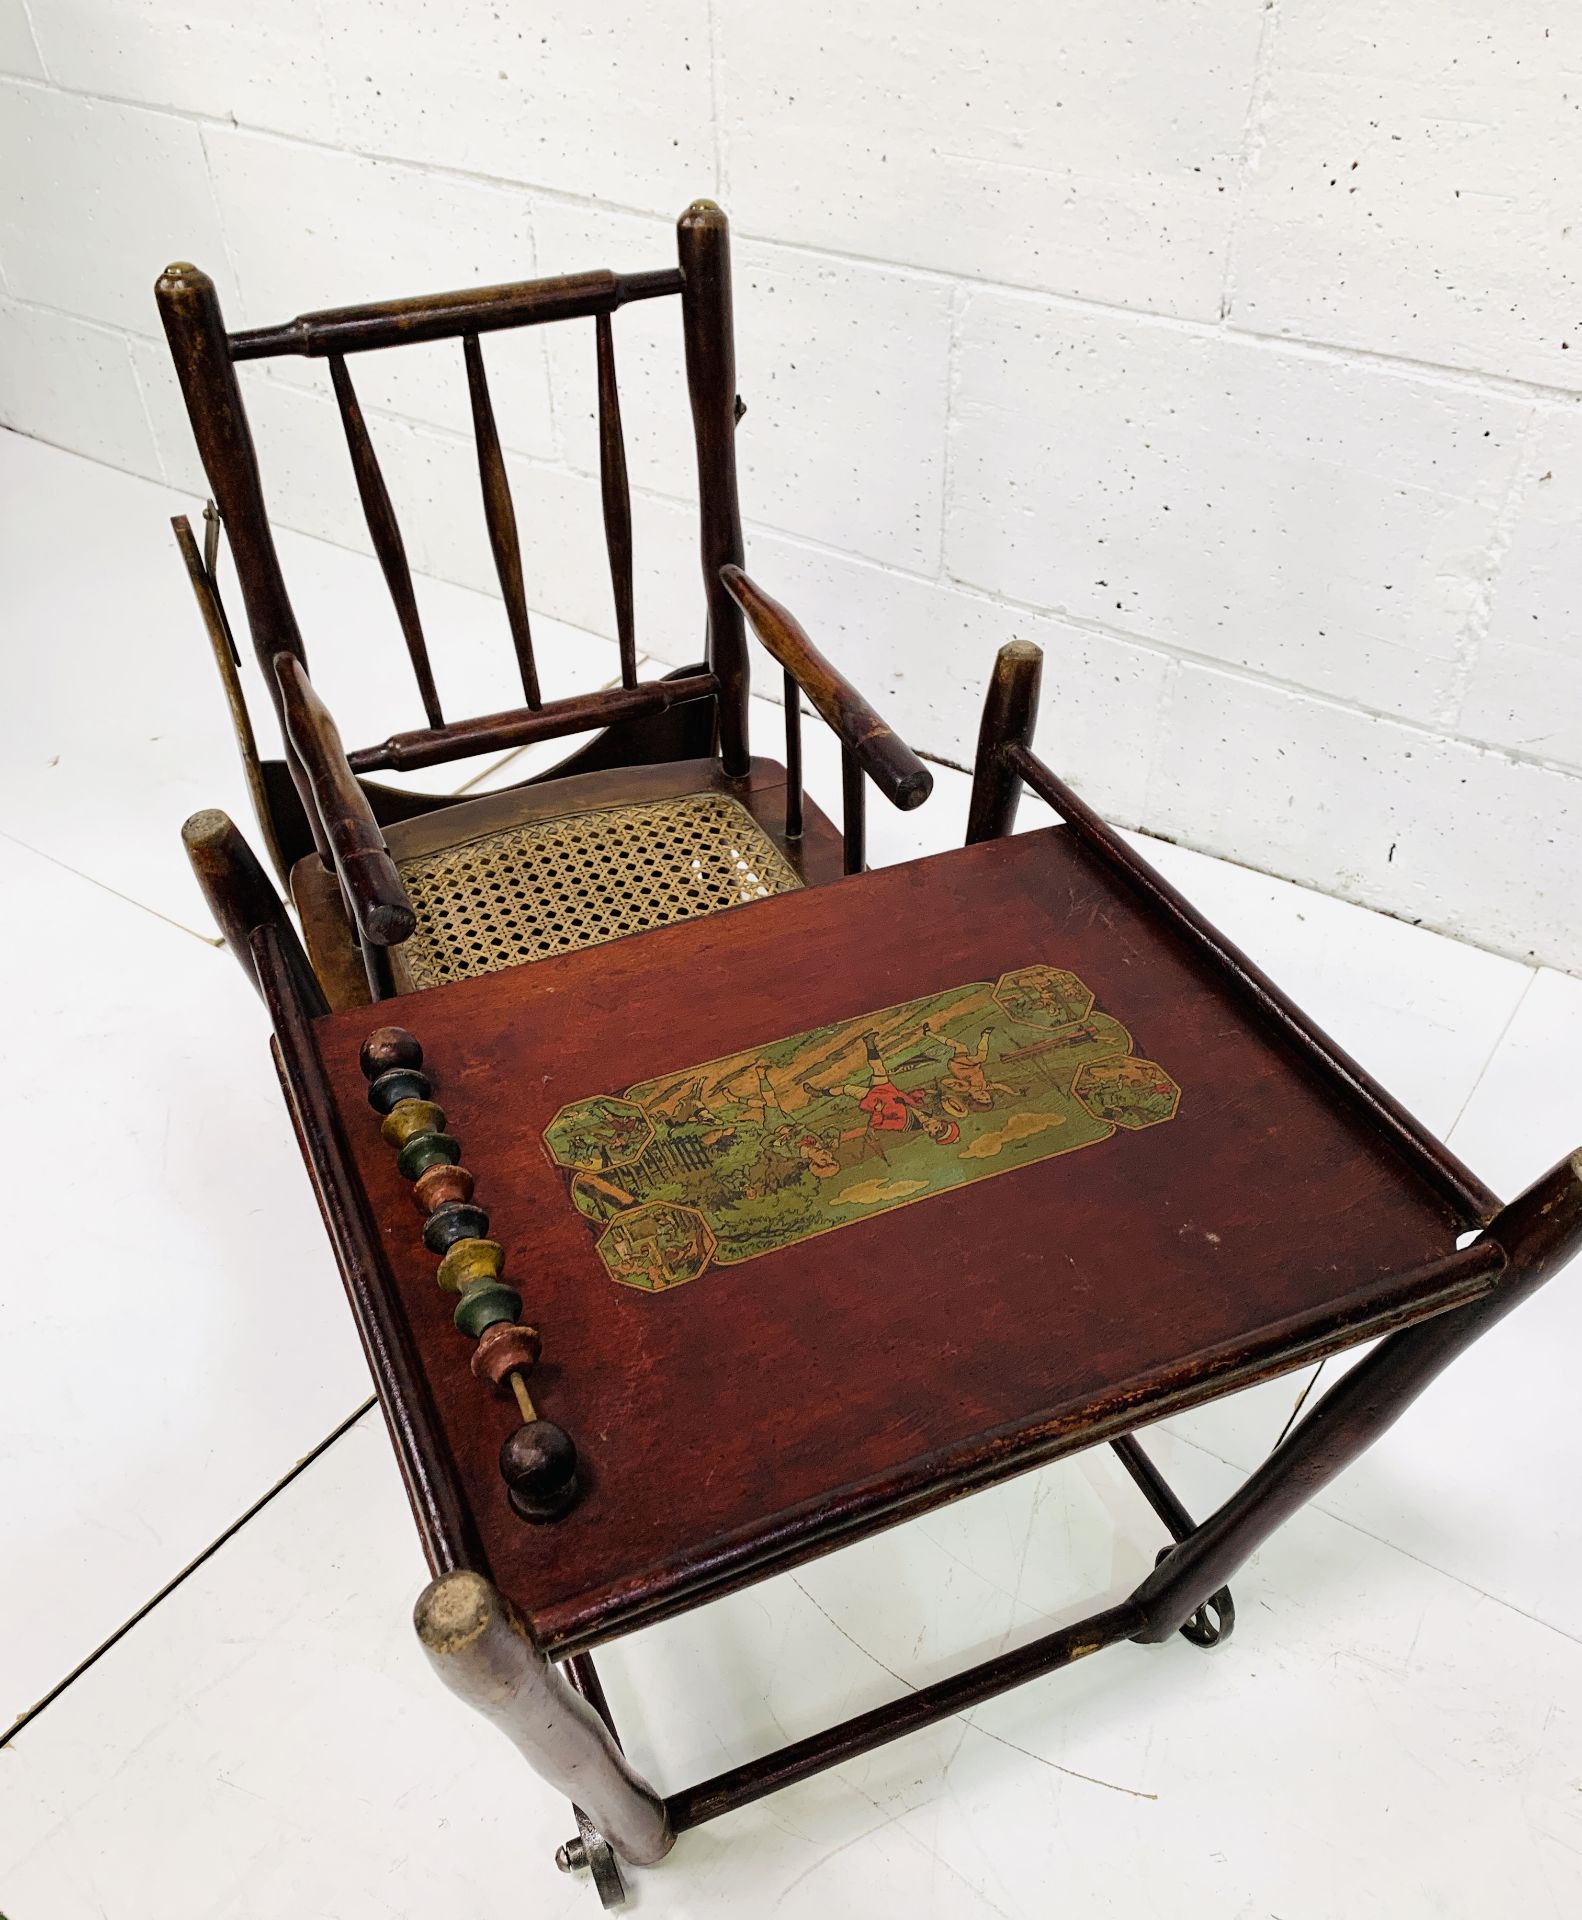 19th century Baumann & Co metamorphic high chair - Image 3 of 6